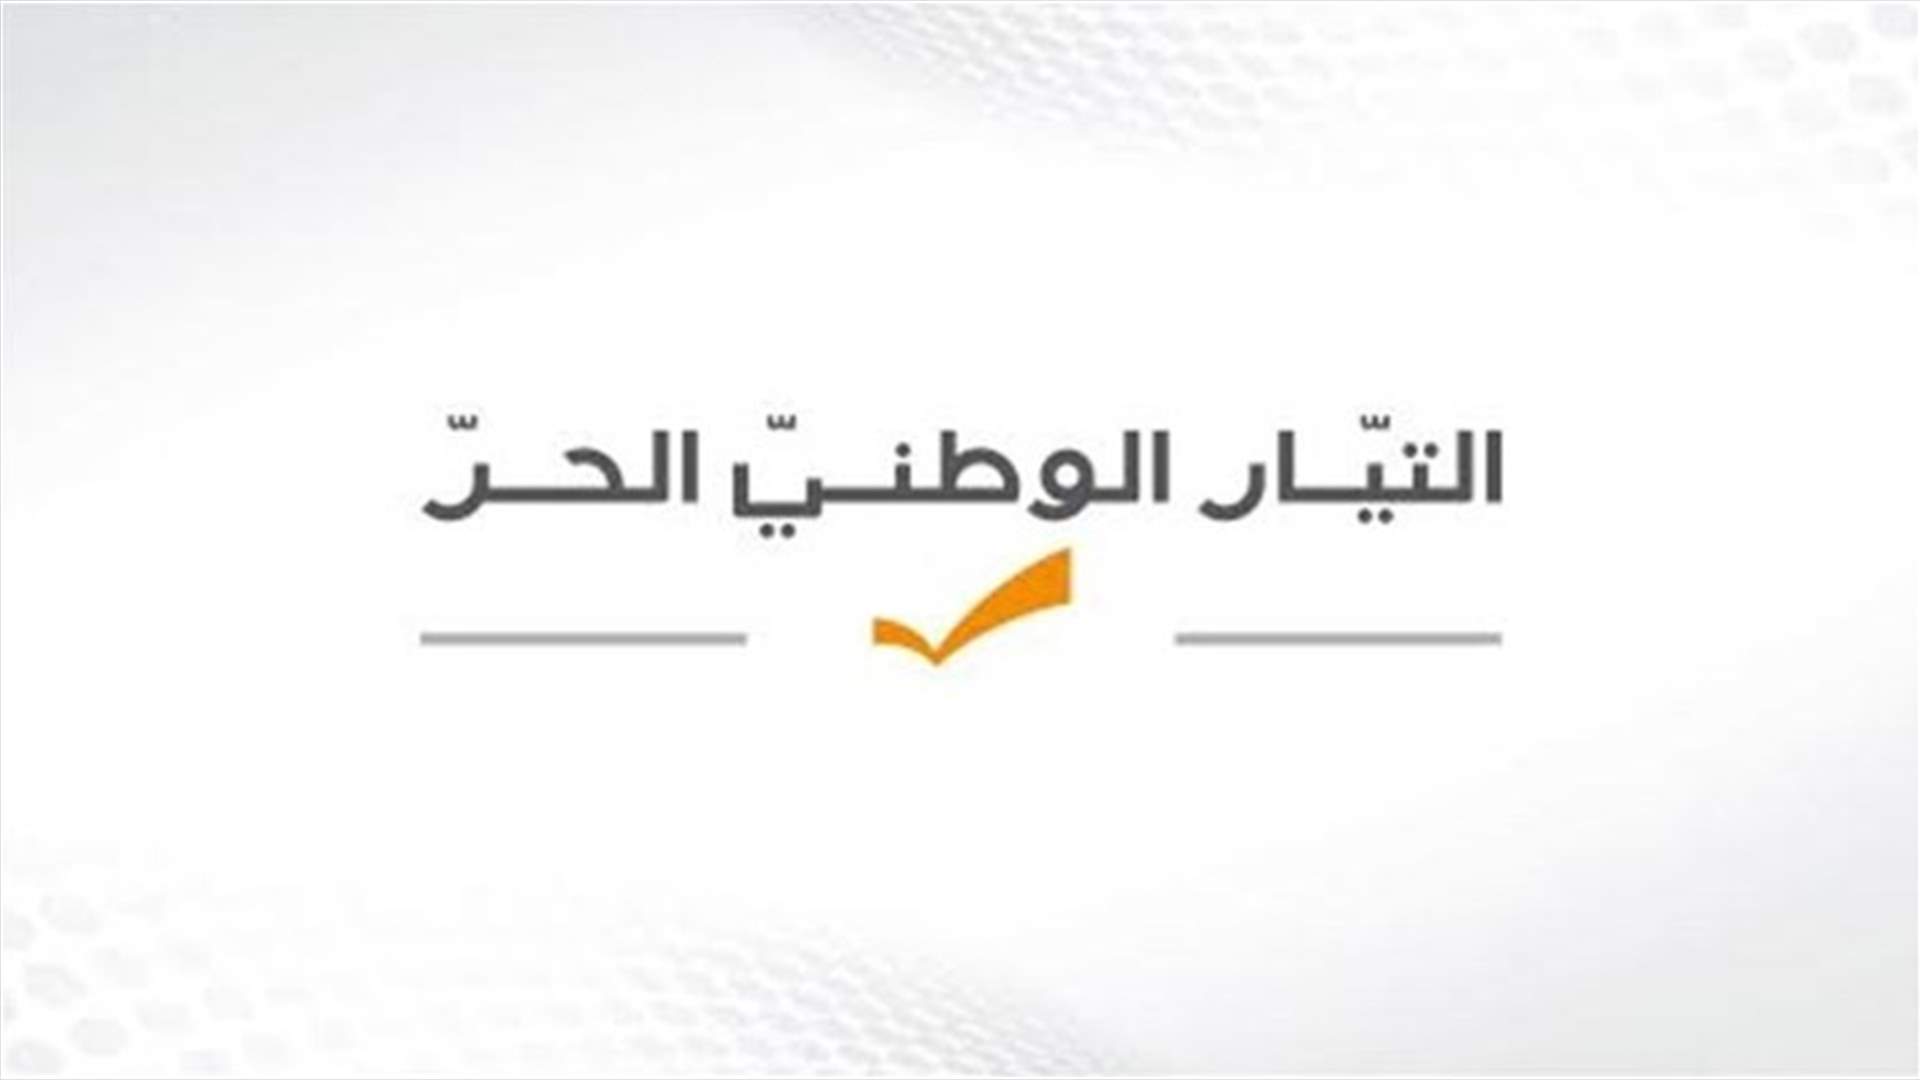 التيار الوطني الحر: لا مرشحين لمراكز نواب حاكم مصرف لبنان منتمين إلى التيار أو قريبين منه سياسياً